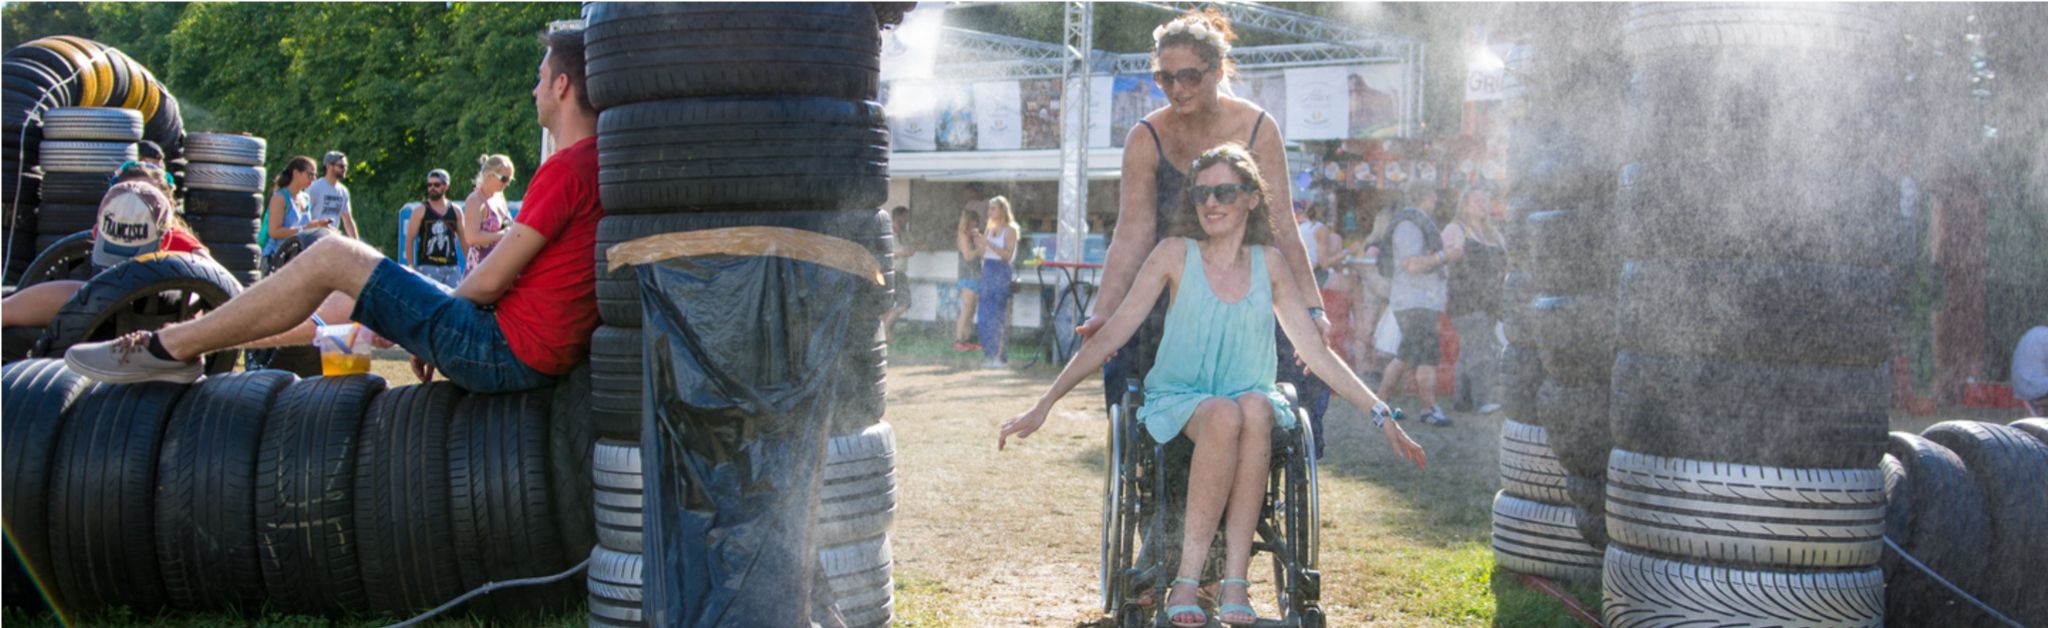 Kulturzeit für alle - Zwei Frauen auf einem Festival, eine davon im Rollstuhl